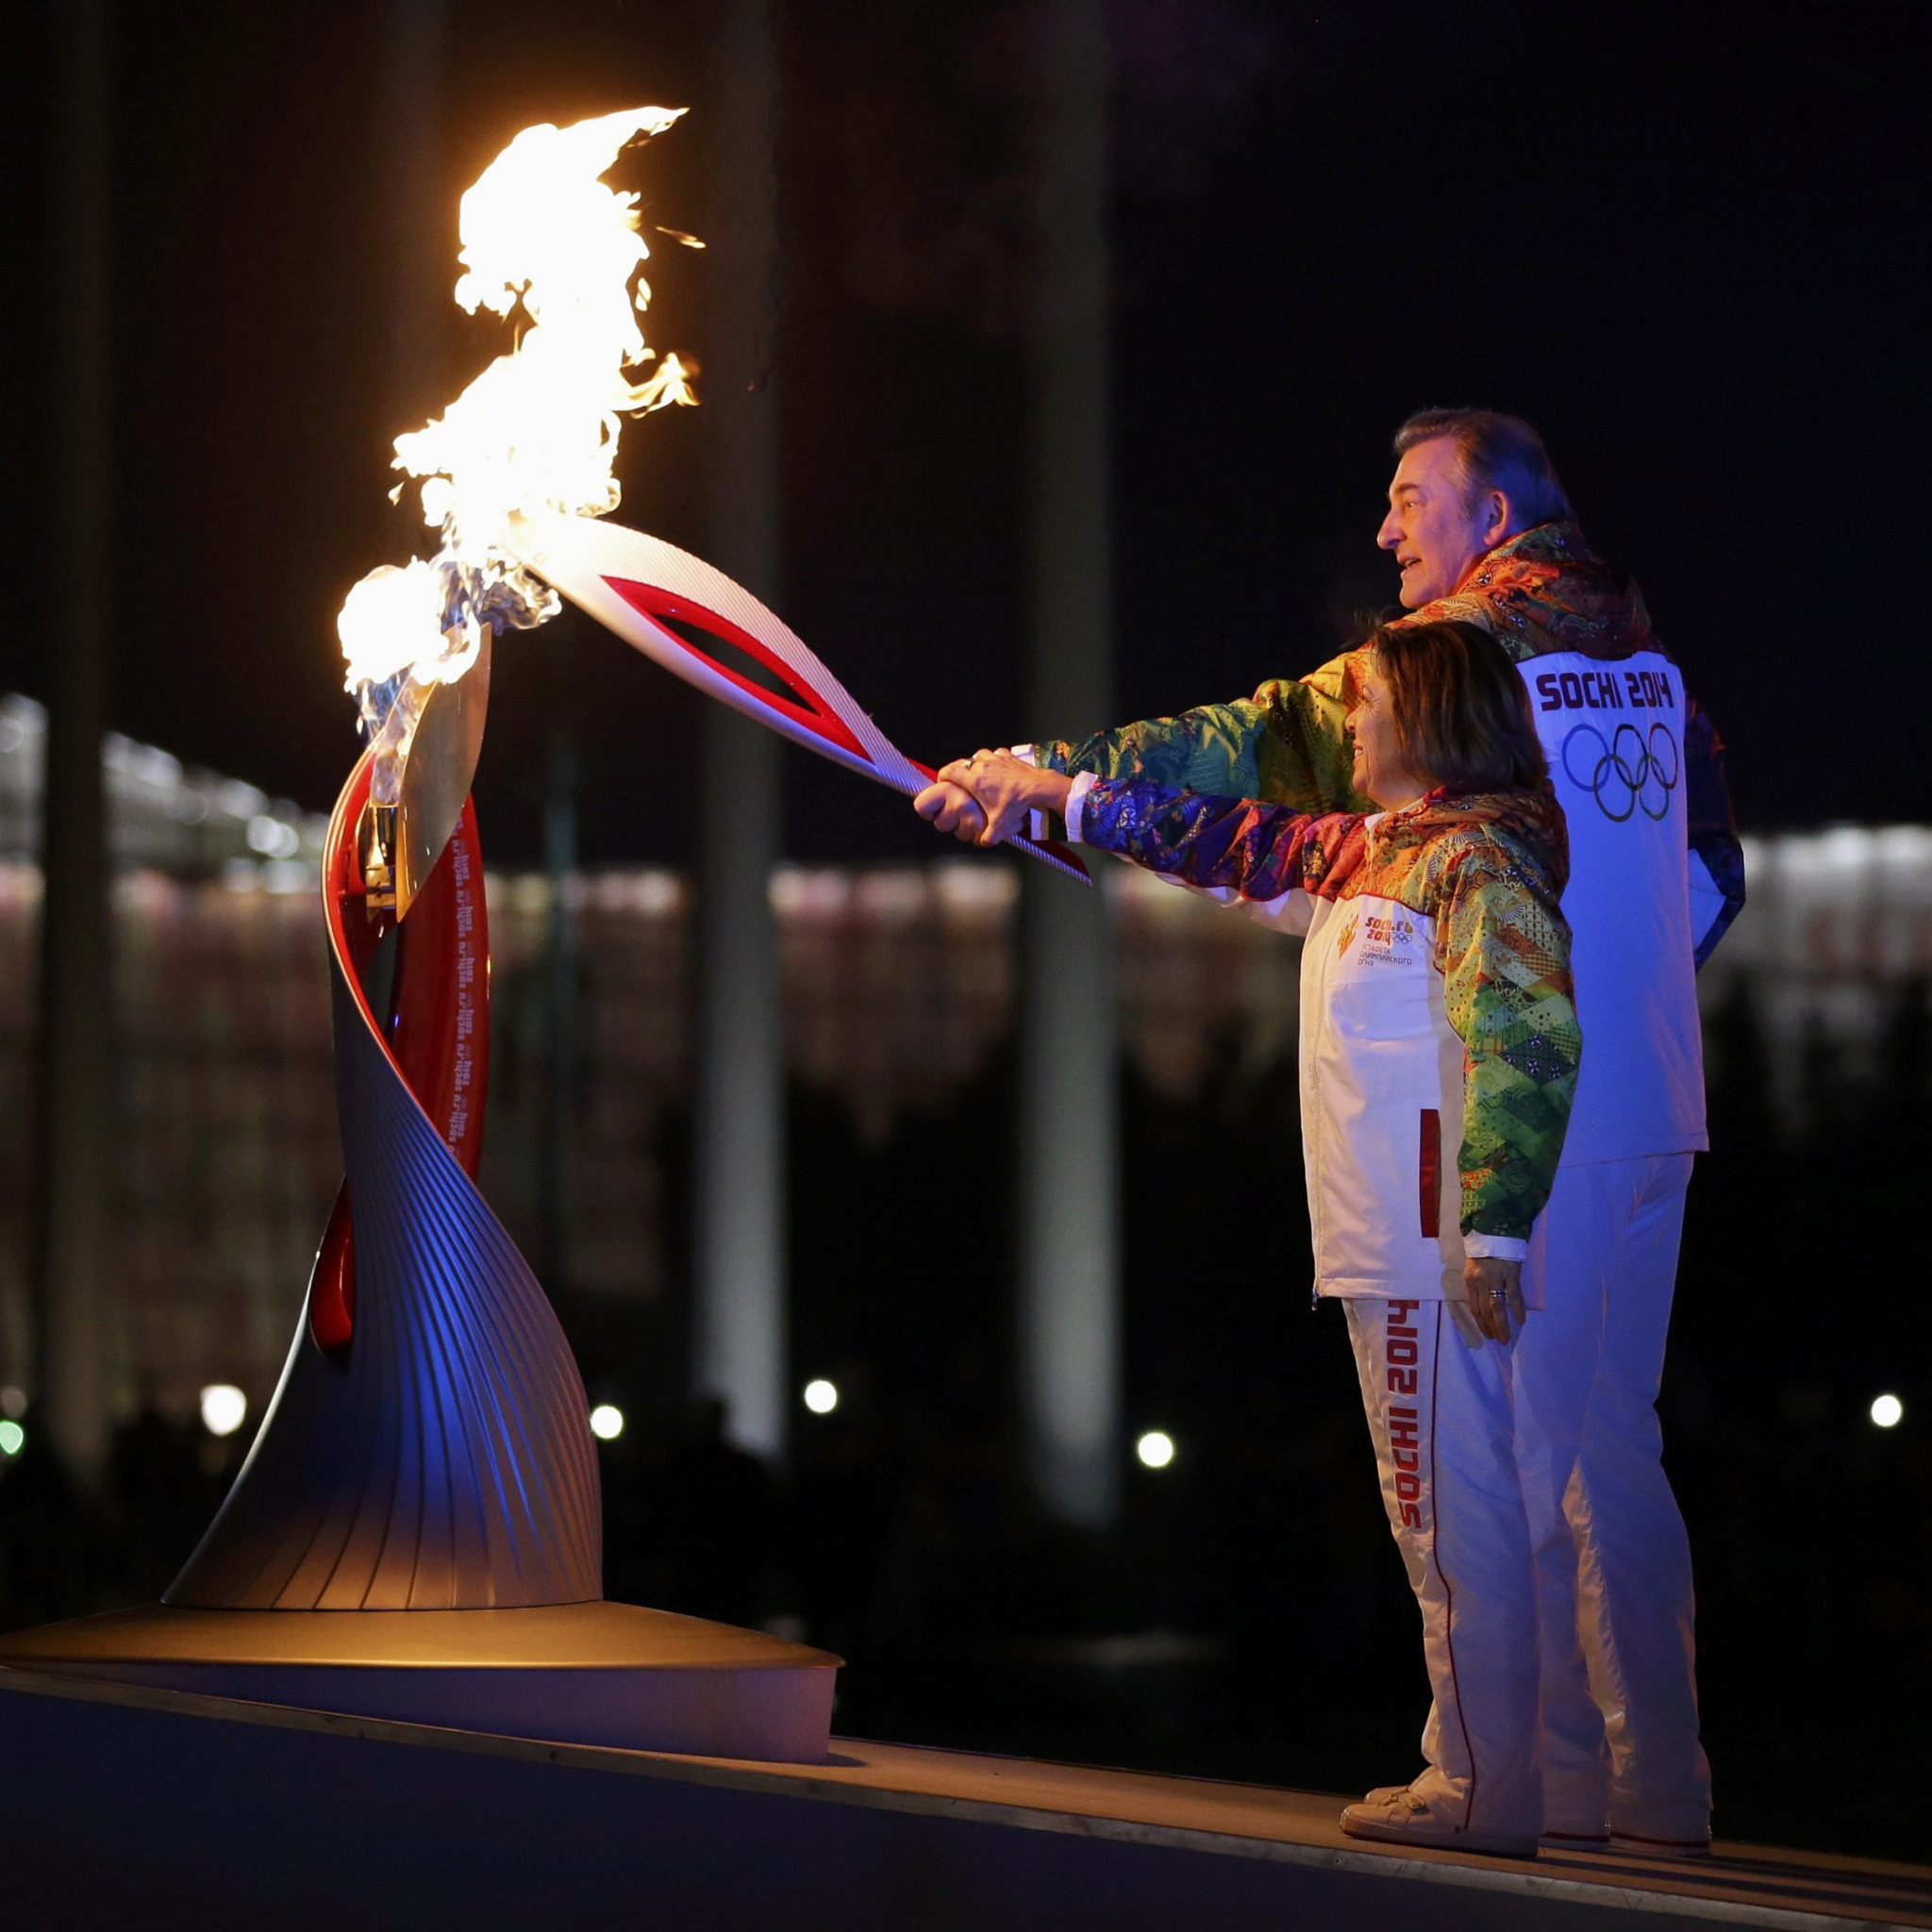 Церемония открытия игр сочи. Олимпийский огонь Сочи 2014. Факел олимпийского огня Сочи 2014. Открытие Олимпийских игр в Сочи 2014.